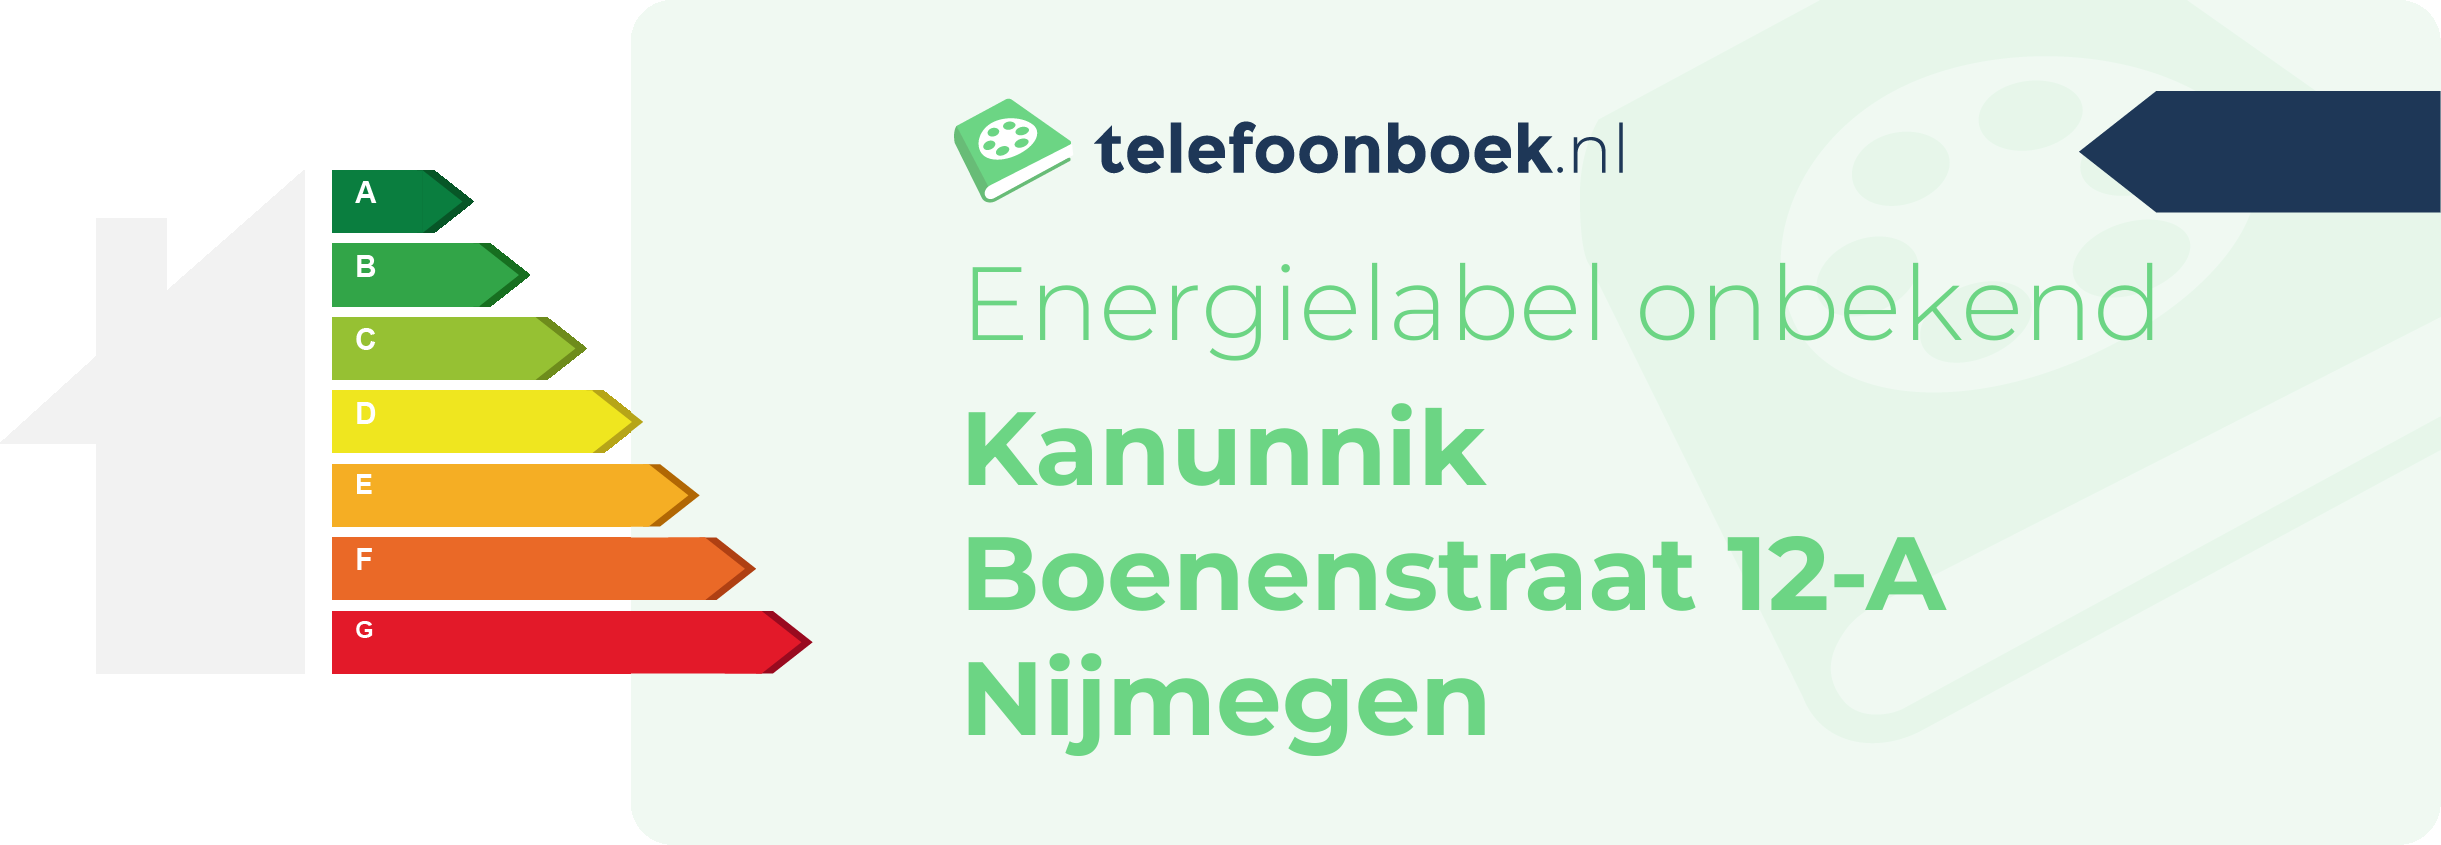 Energielabel Kanunnik Boenenstraat 12-A Nijmegen